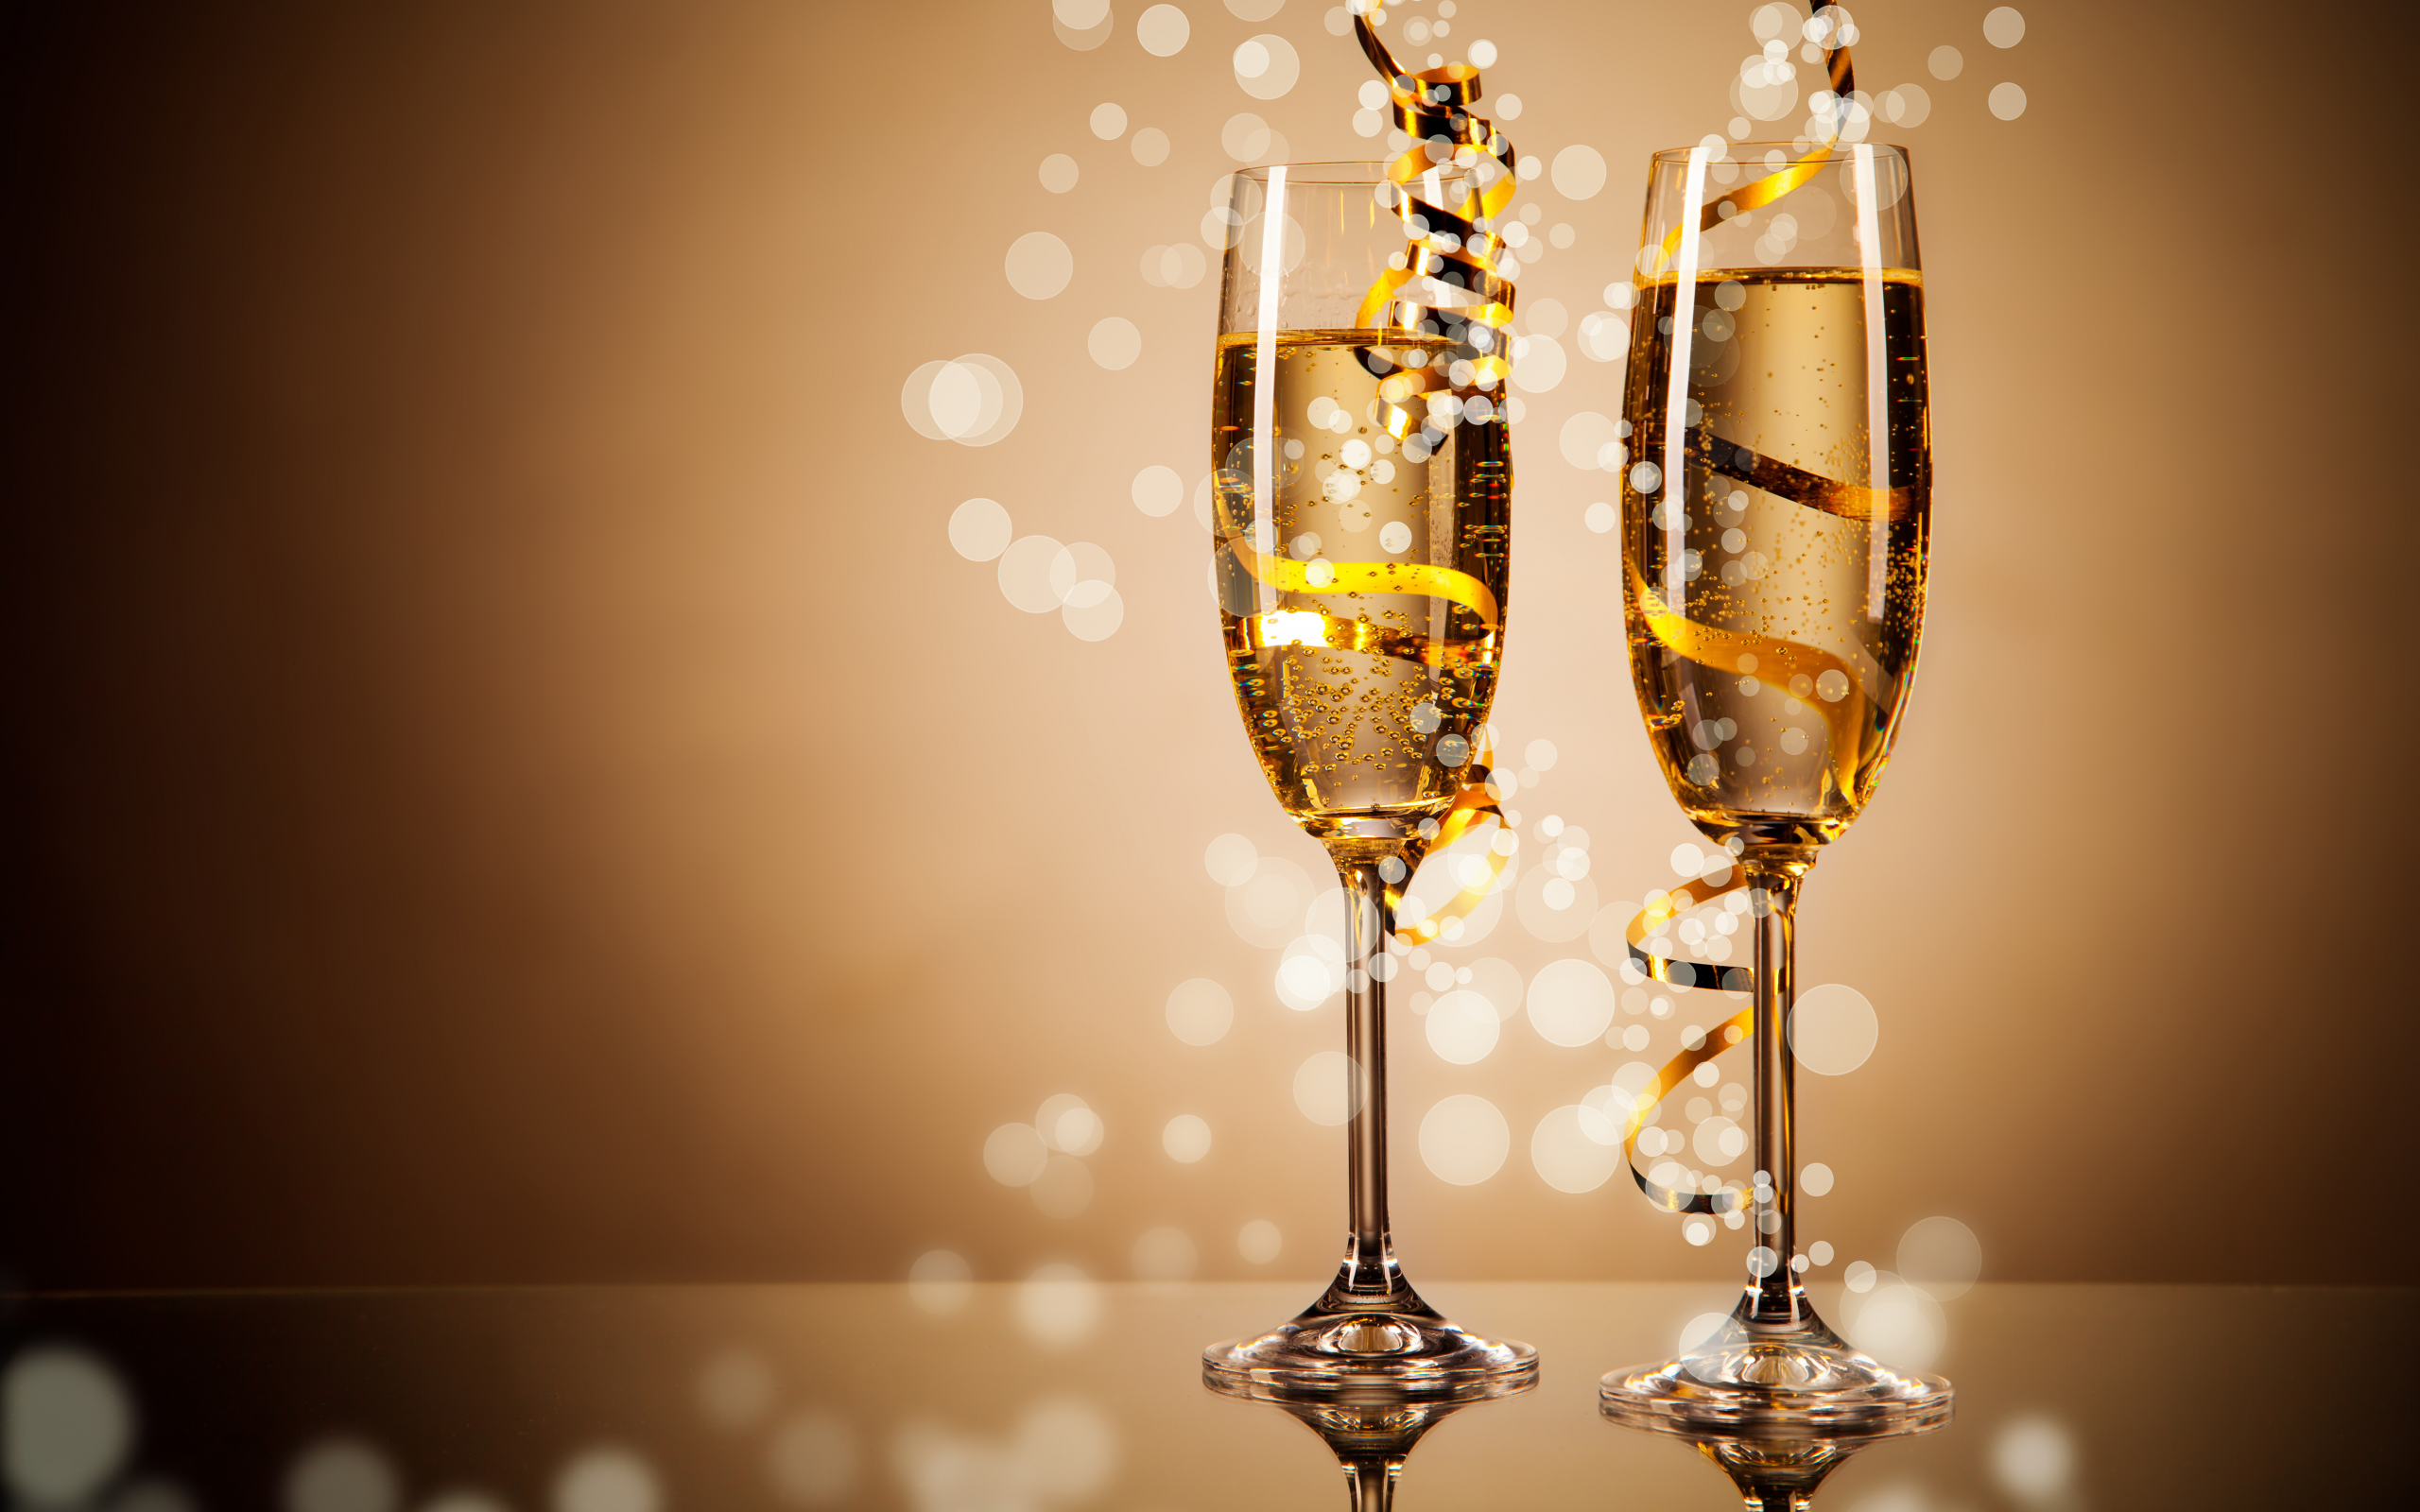 праздники, шампанское, боке, бокалы, золотые, ленточки